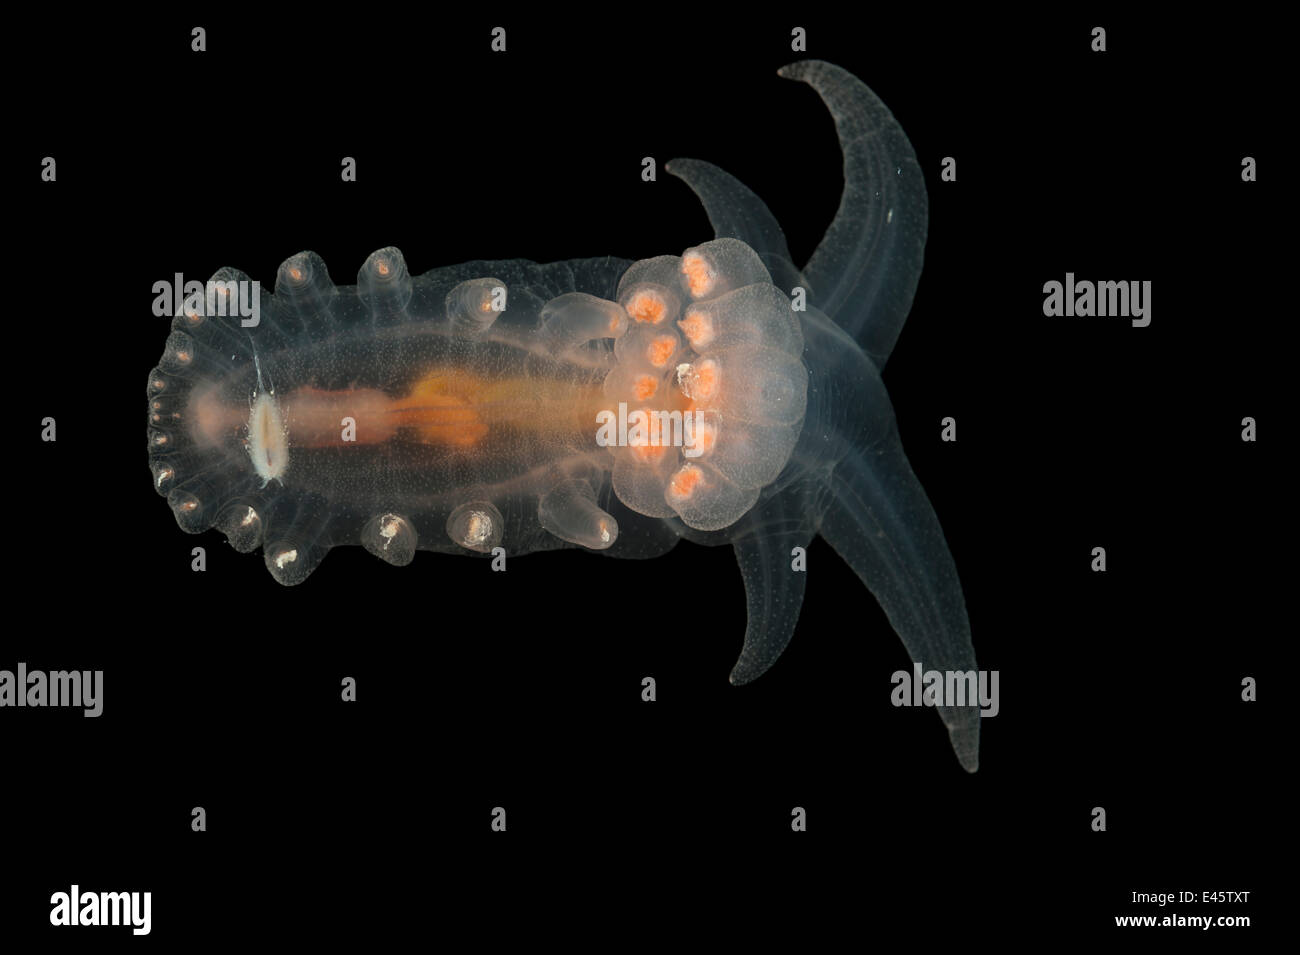 Deepsea bentónicas (Peniagone porcella cohombros de mar) de la Dorsal del Atlántico medio, profundidad aprox 2500m, junio de 2010 Foto de stock